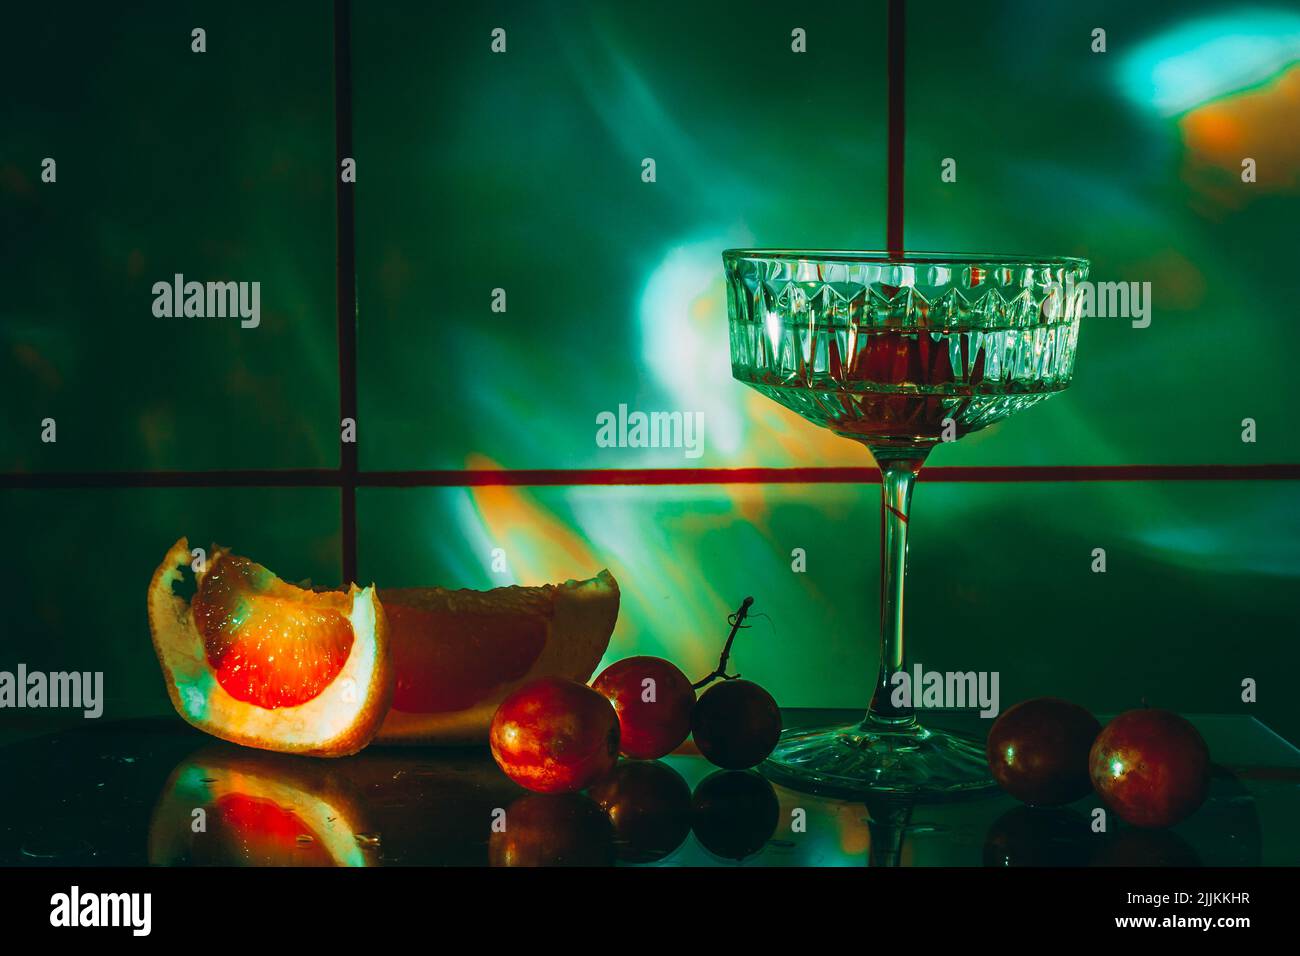 Kristallglas für Cocktails auf einer Glasoberfläche. Früchte - Trauben, Grapefruit neben dem Glas. Abstrakter Hintergrund. Stockfoto